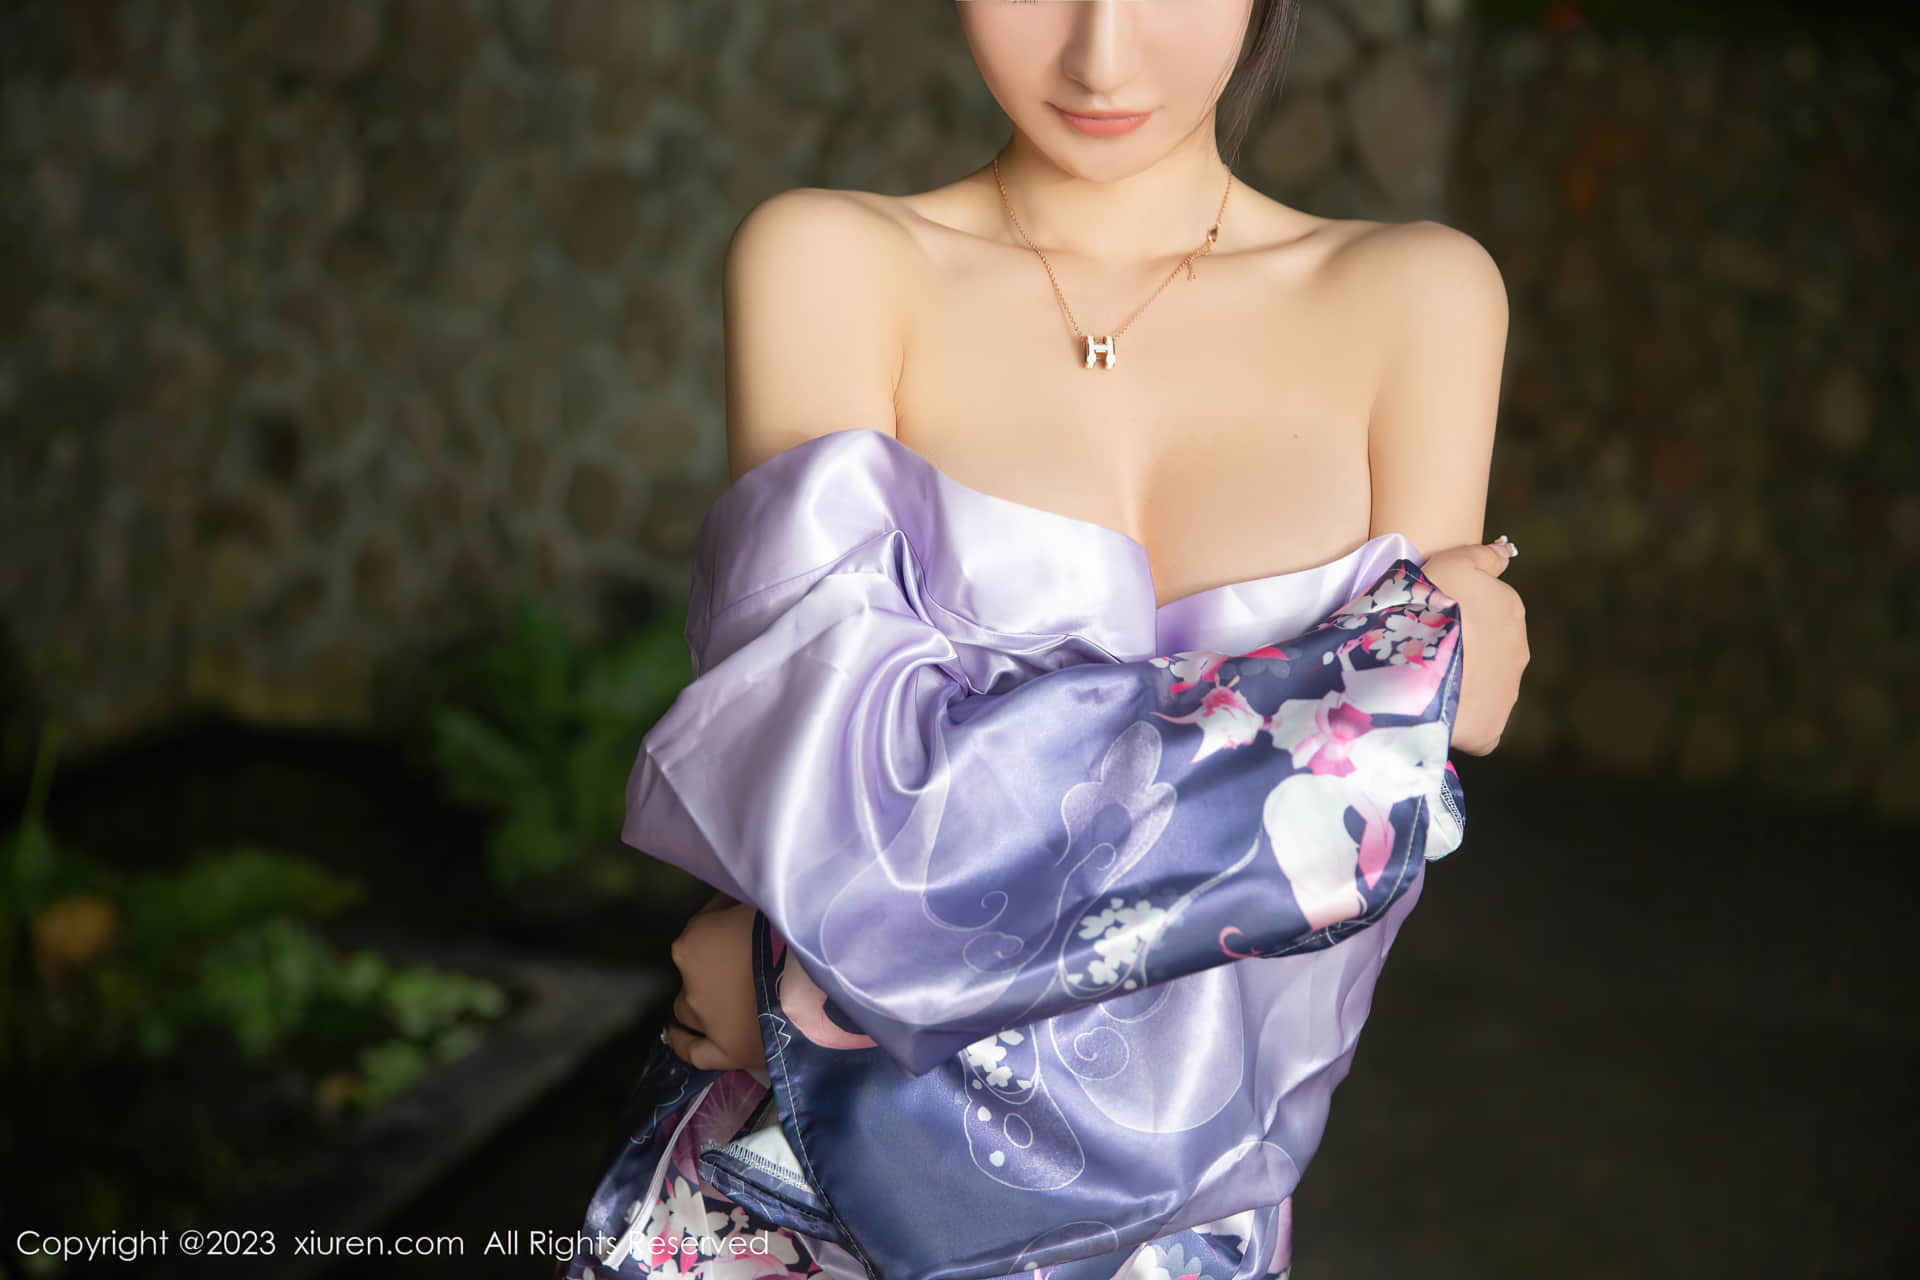 熊小诺 性格日式紫色和服 迷人的丽质 曼妙苗条身姿明艳动人